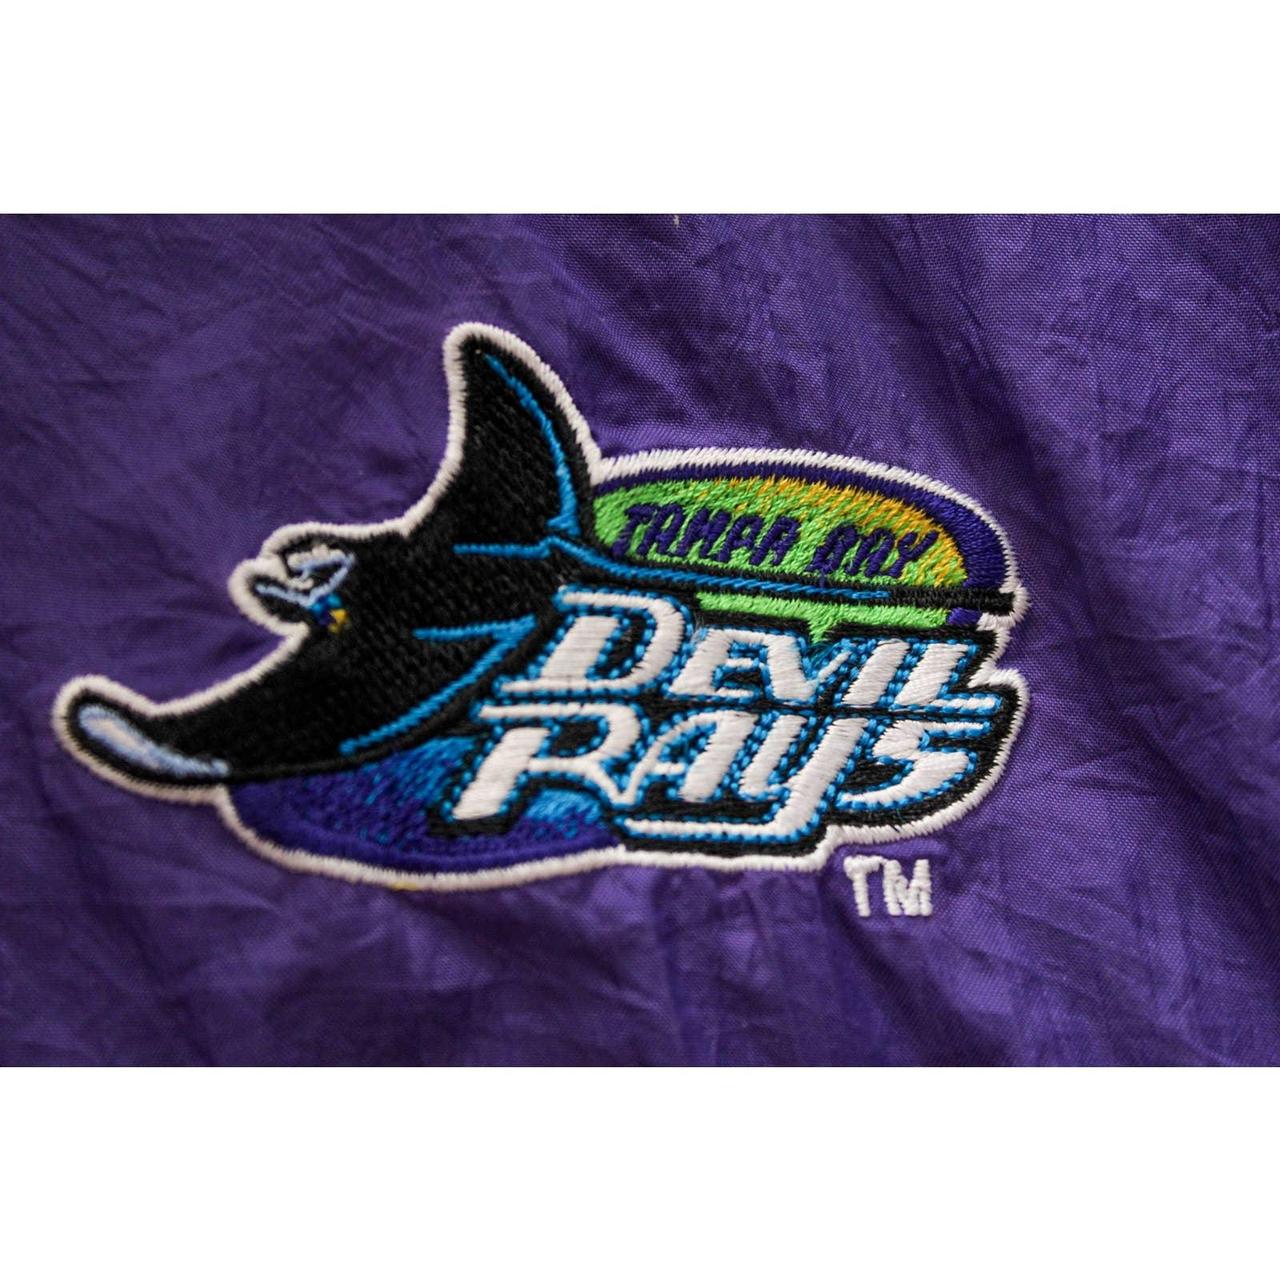 Vintage Starter Tampa Bay Devil Rays Jacket Overall - Depop